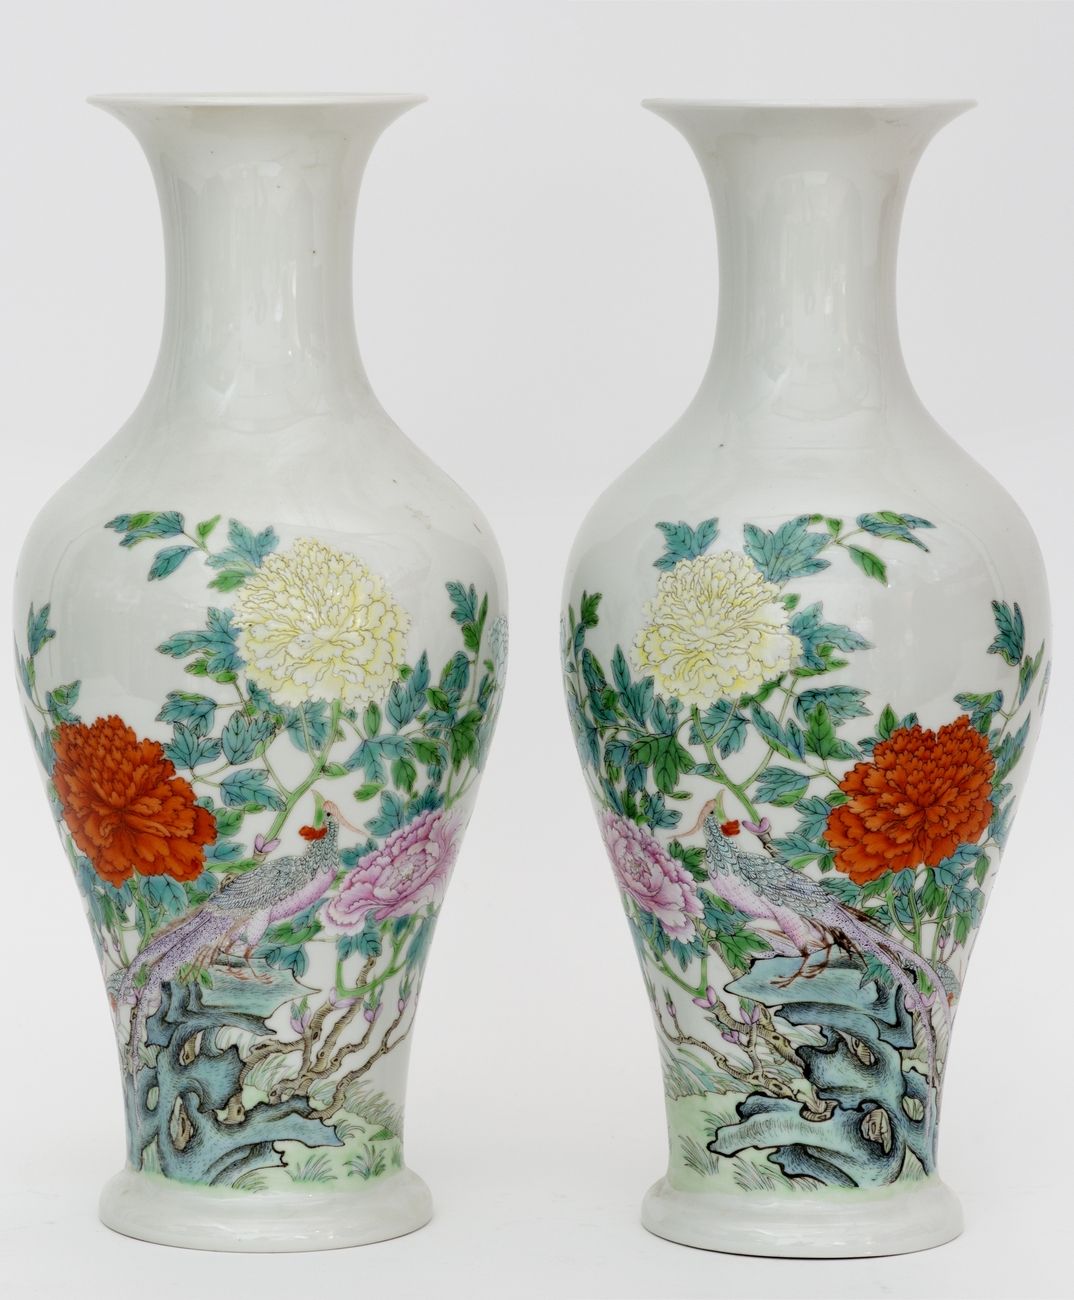 Null 中国，民国时期（1912-1949）
一对以法米勒珐琅彩装饰的花石上的野鸡的瓷器花瓶。
四个字的标记。
高度 : 35 cm
(底座上的芯片)